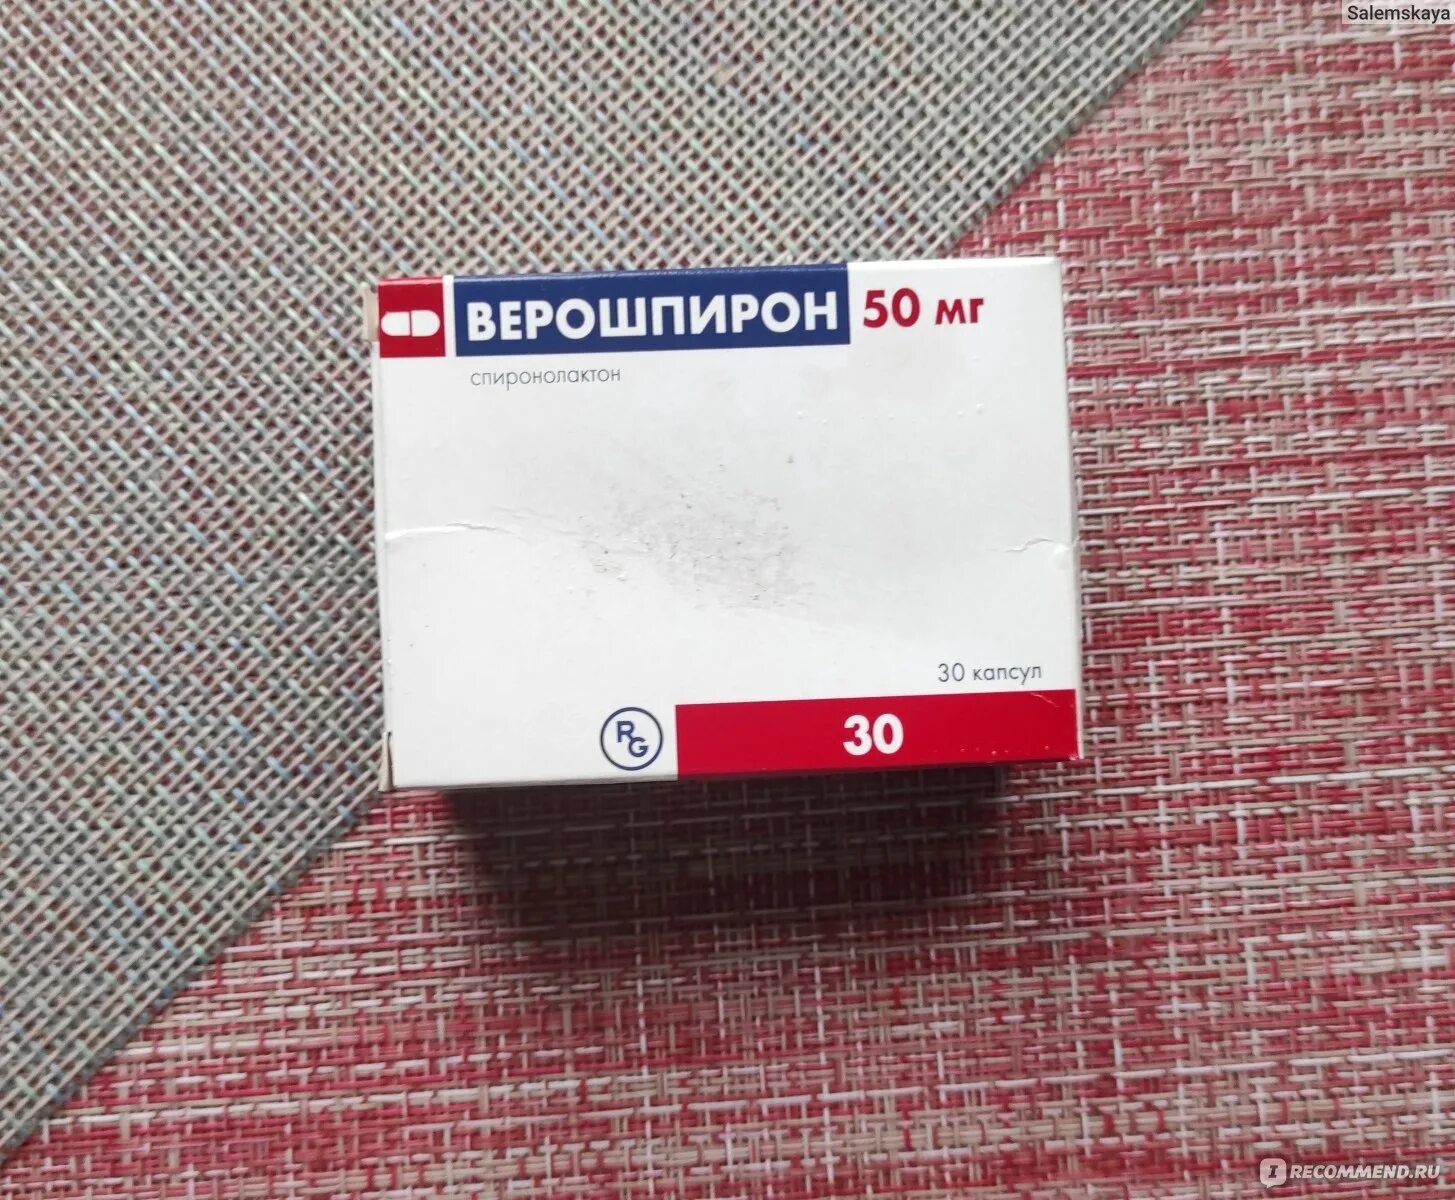 Сколько принимать верошпирон. Верошпирон 50 мг. Верошпирон 50 мг таблетки. Спиронолактон верошпирон. Верошпирон капсулы.